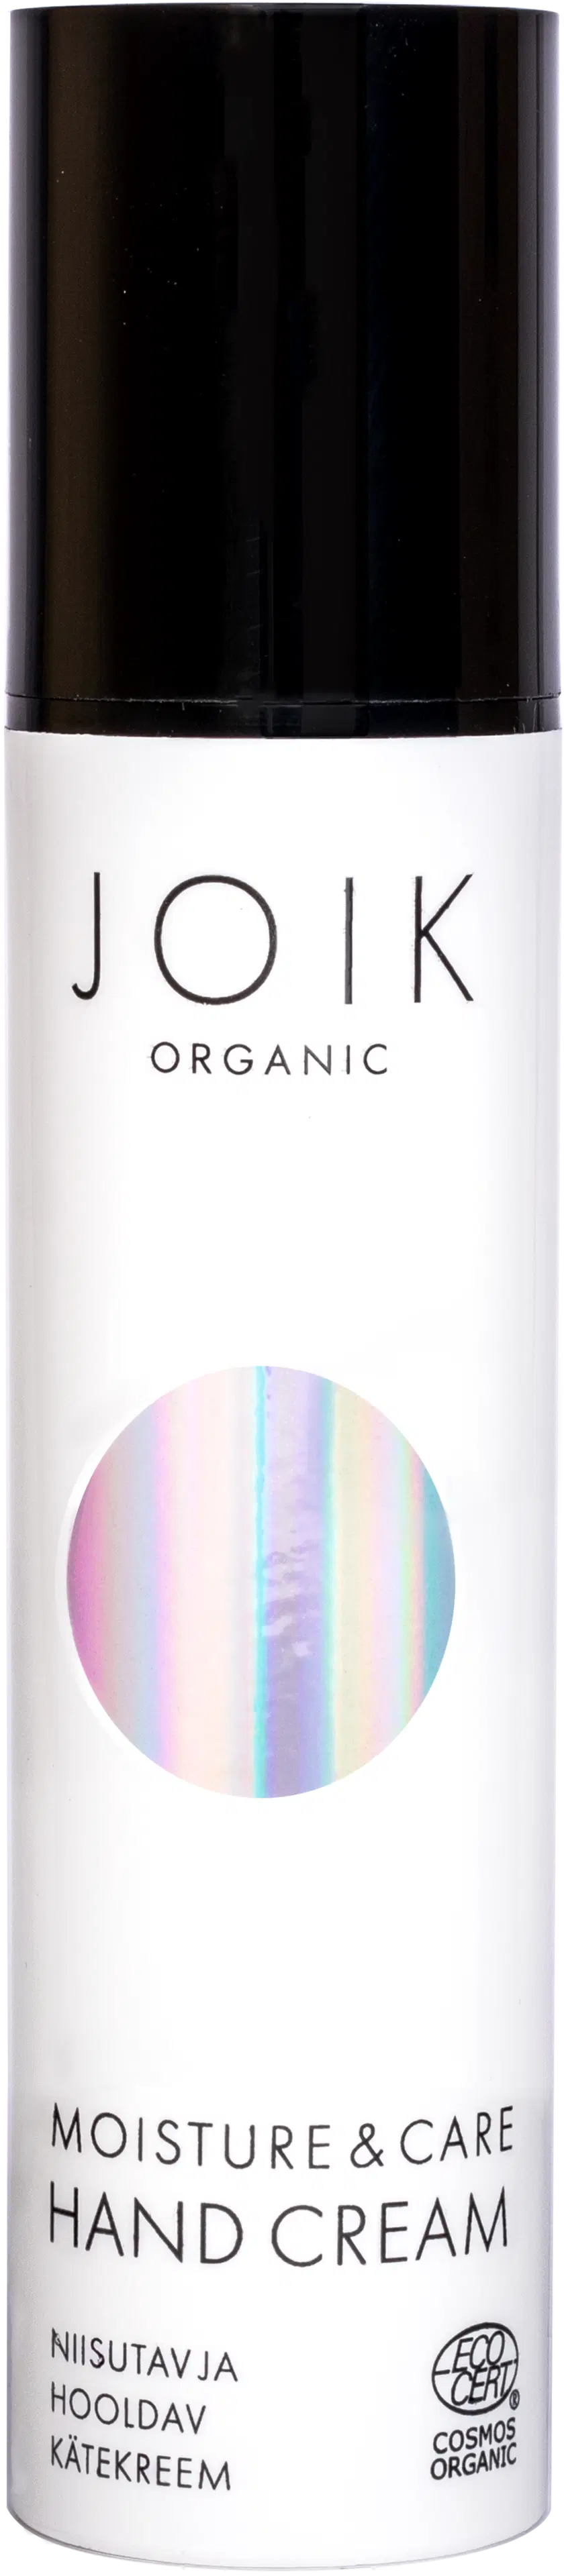 JOIK Organic Moisture & Care käsivoide 50 ml